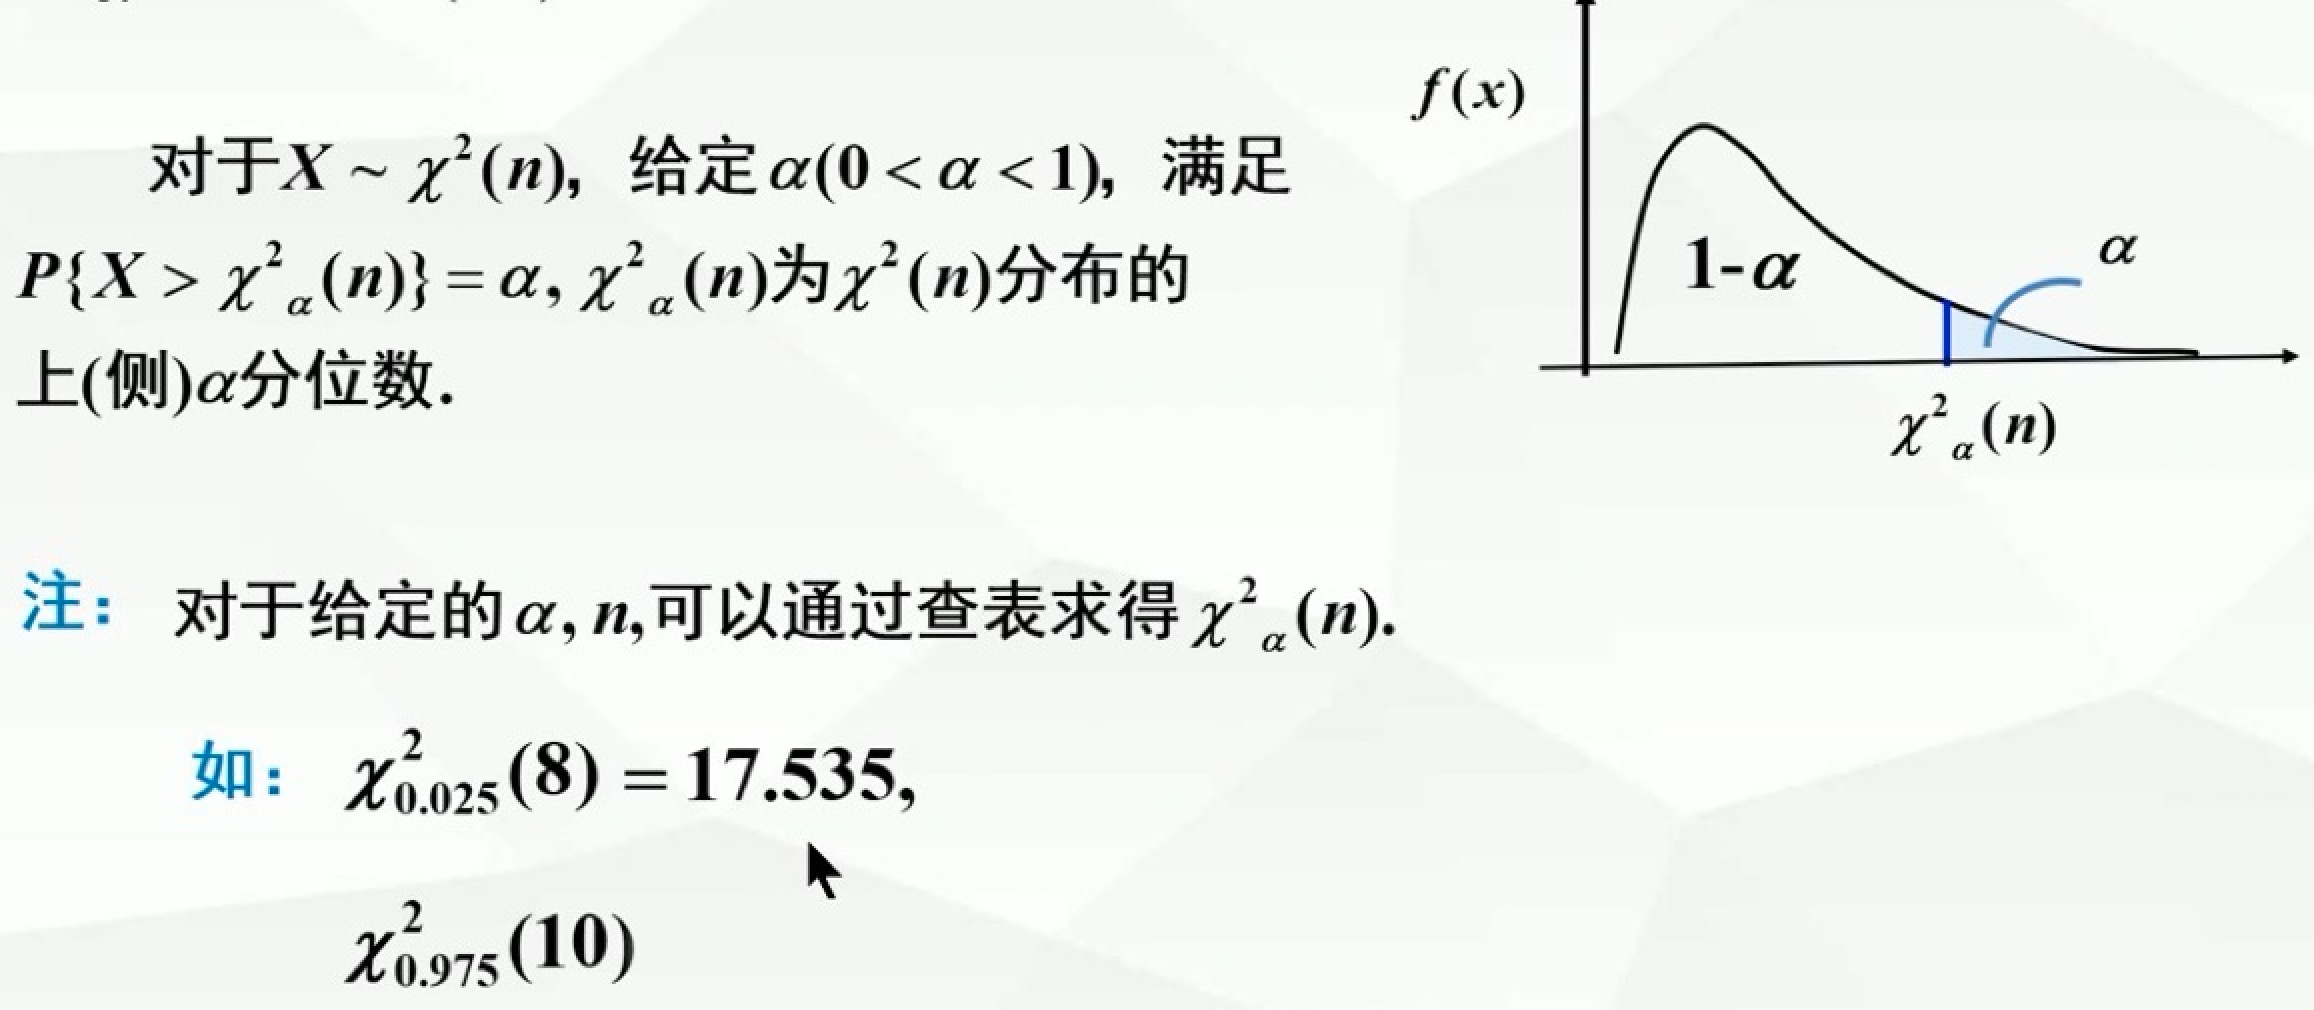 p36-X²分布的上α分位数